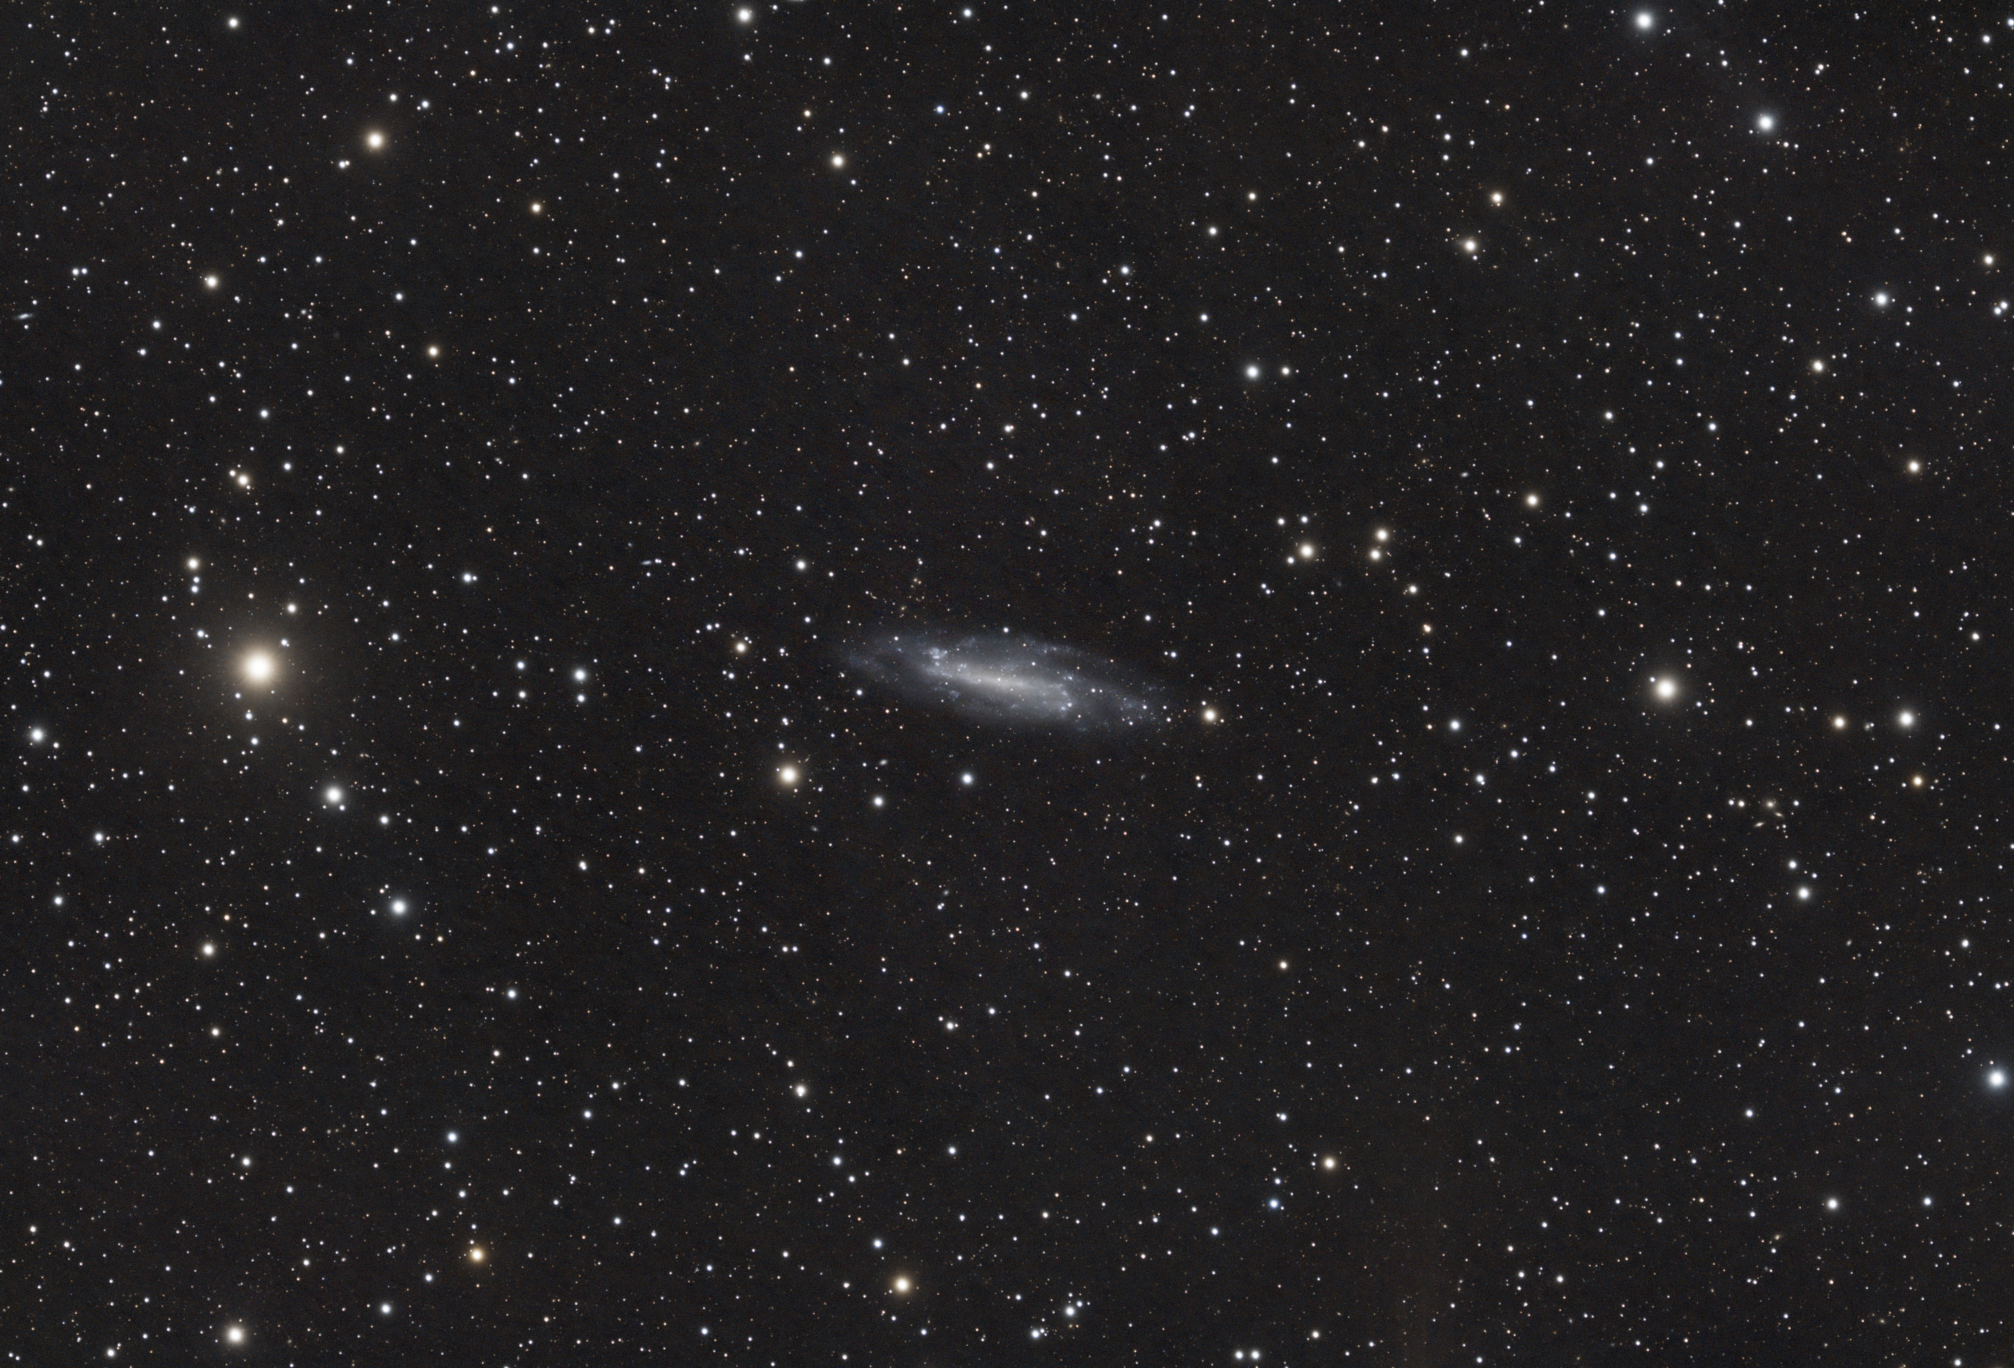 NGC4236